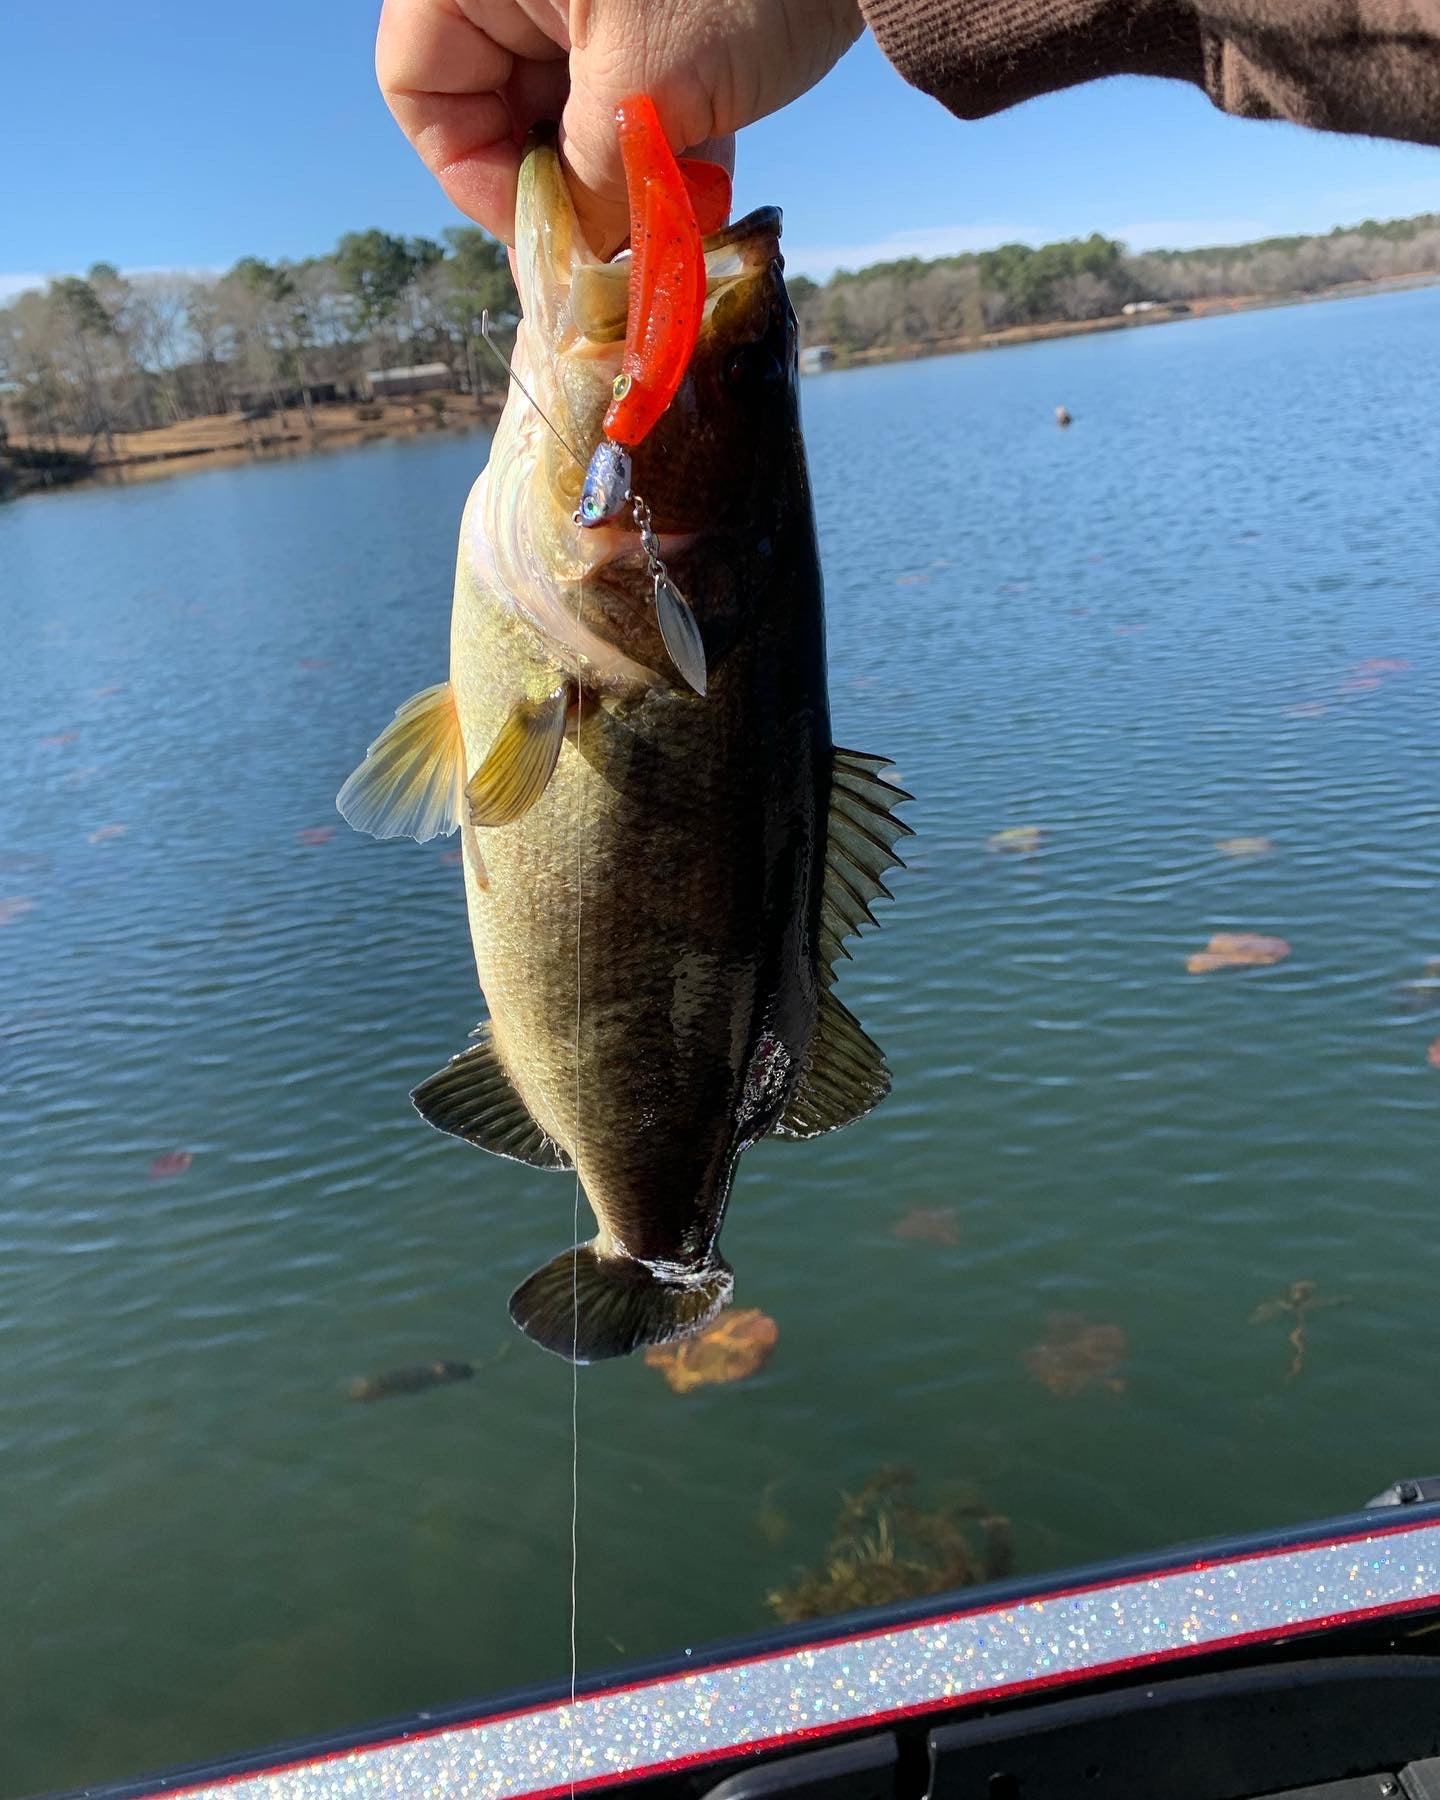 4” swim bait straight tail (chatter bait trailer) – East Texas